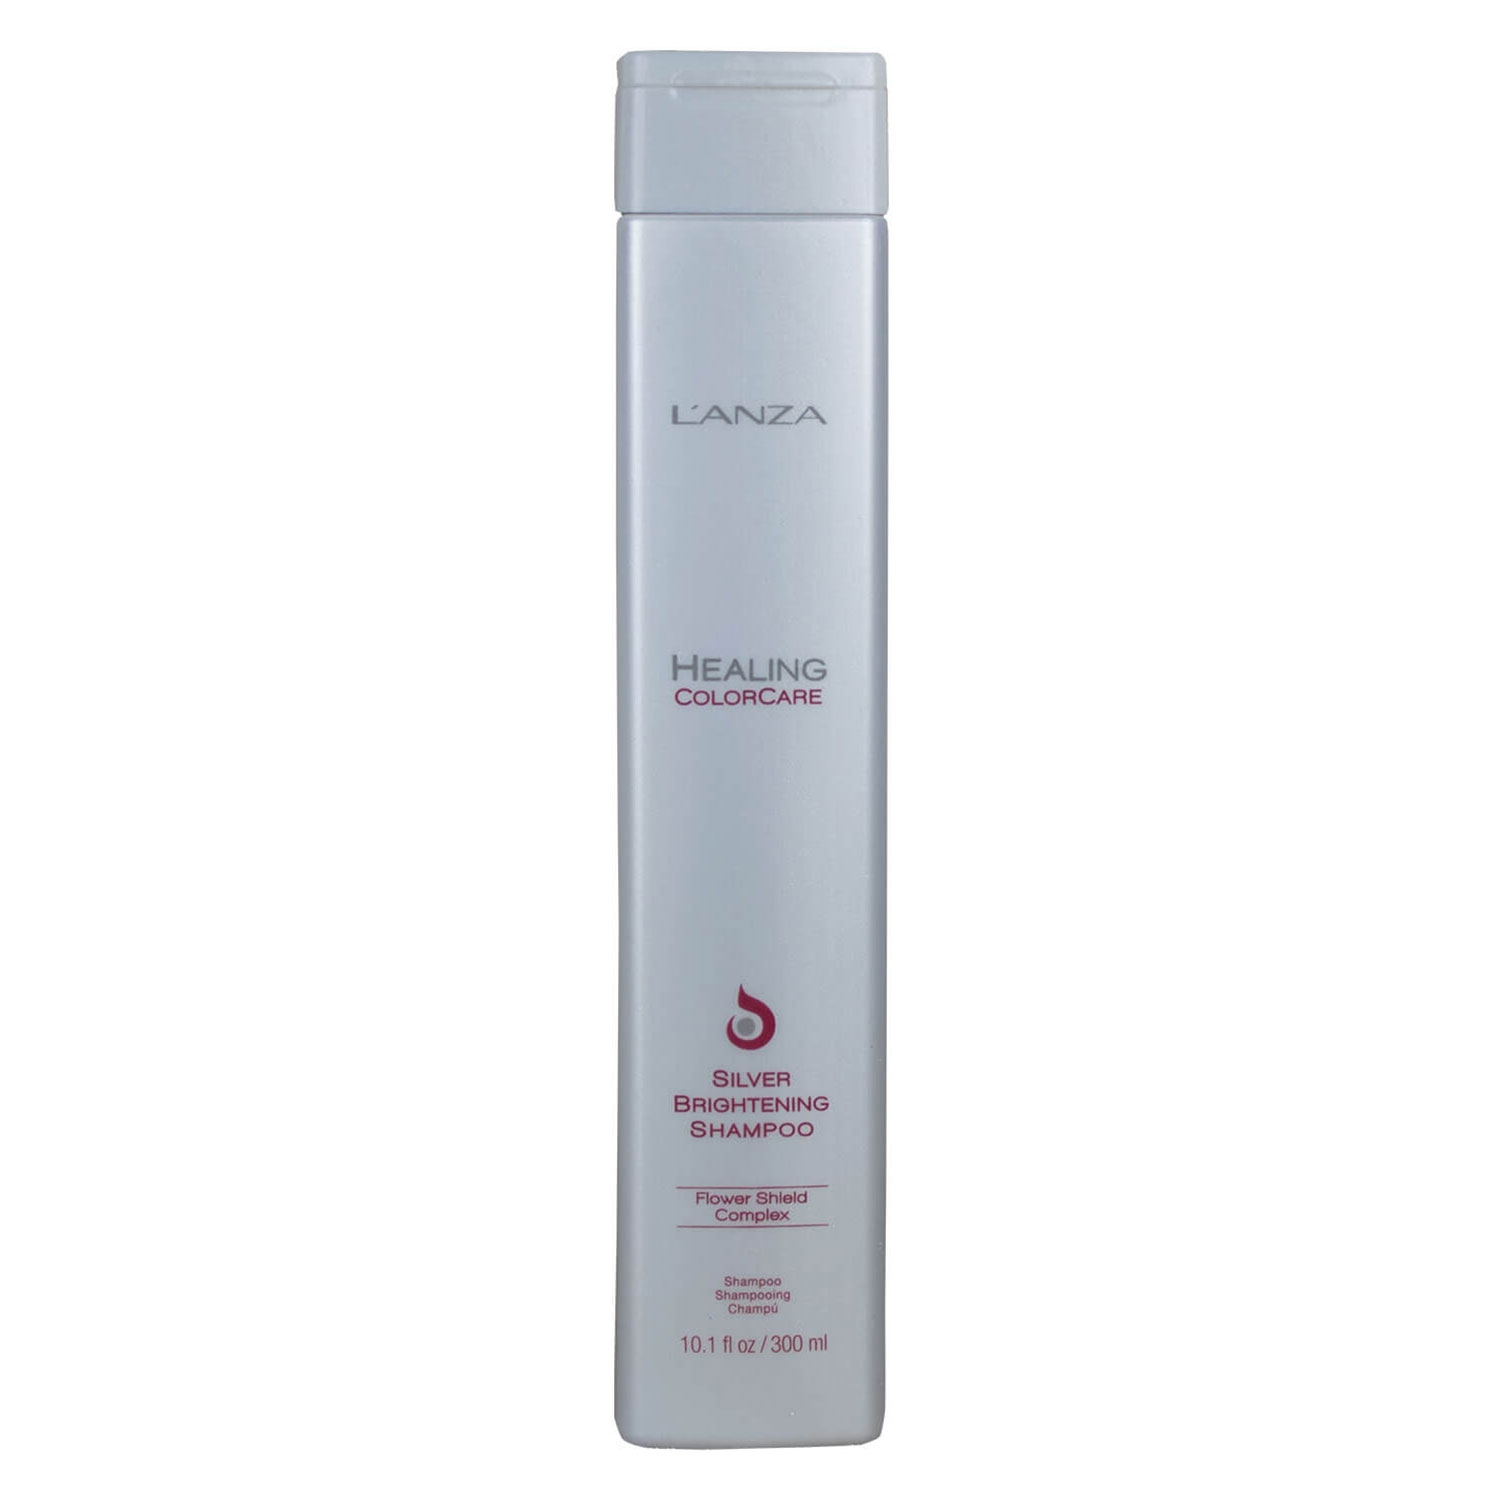 Produktbild von Healing Colorcare - Silver Brightening Shampoo